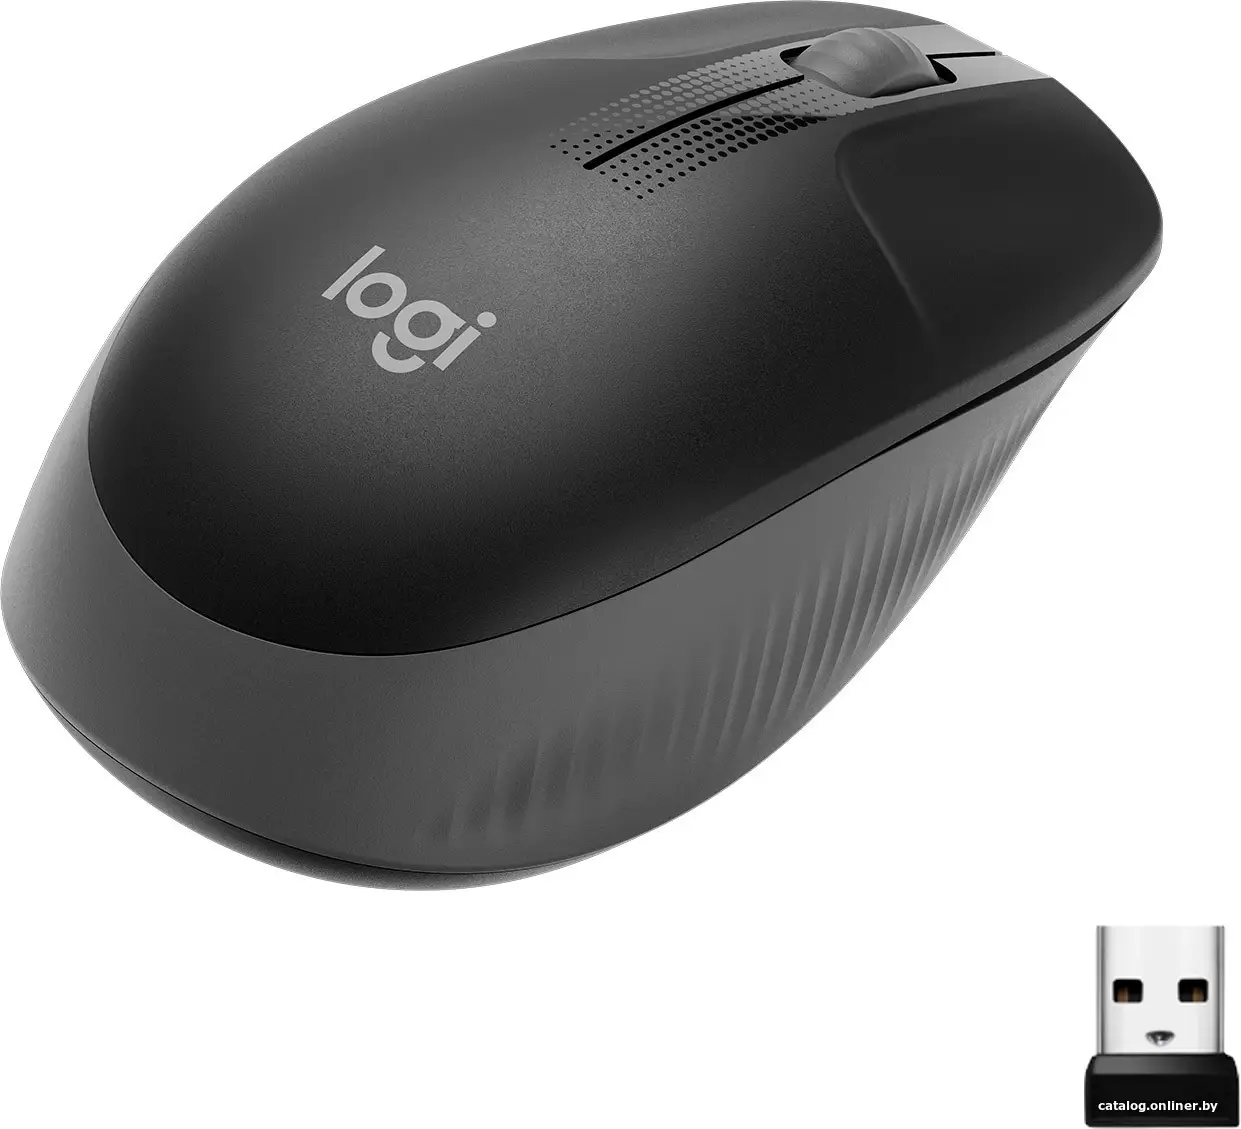 Купить LOGITECH M190 Wireless Mouse - CHARCOAL, цена, опт и розница